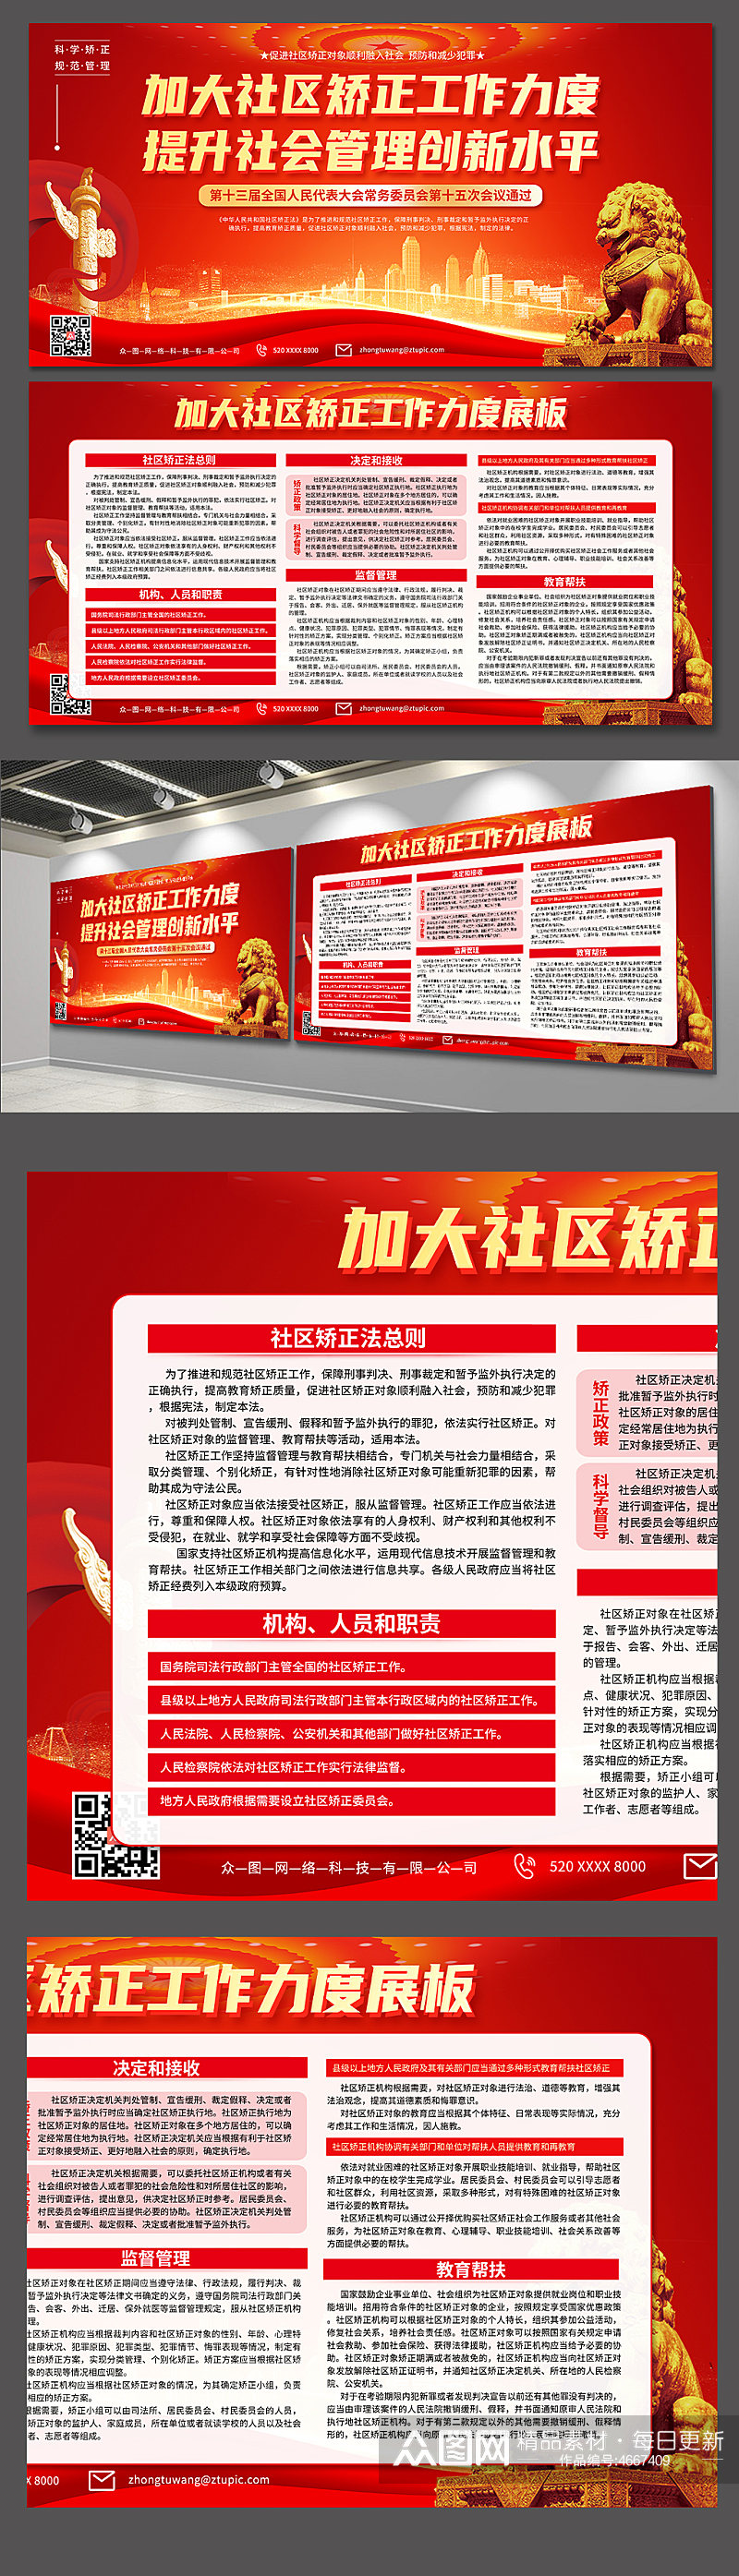 学习中华人民共和国社区矫正法展板素材